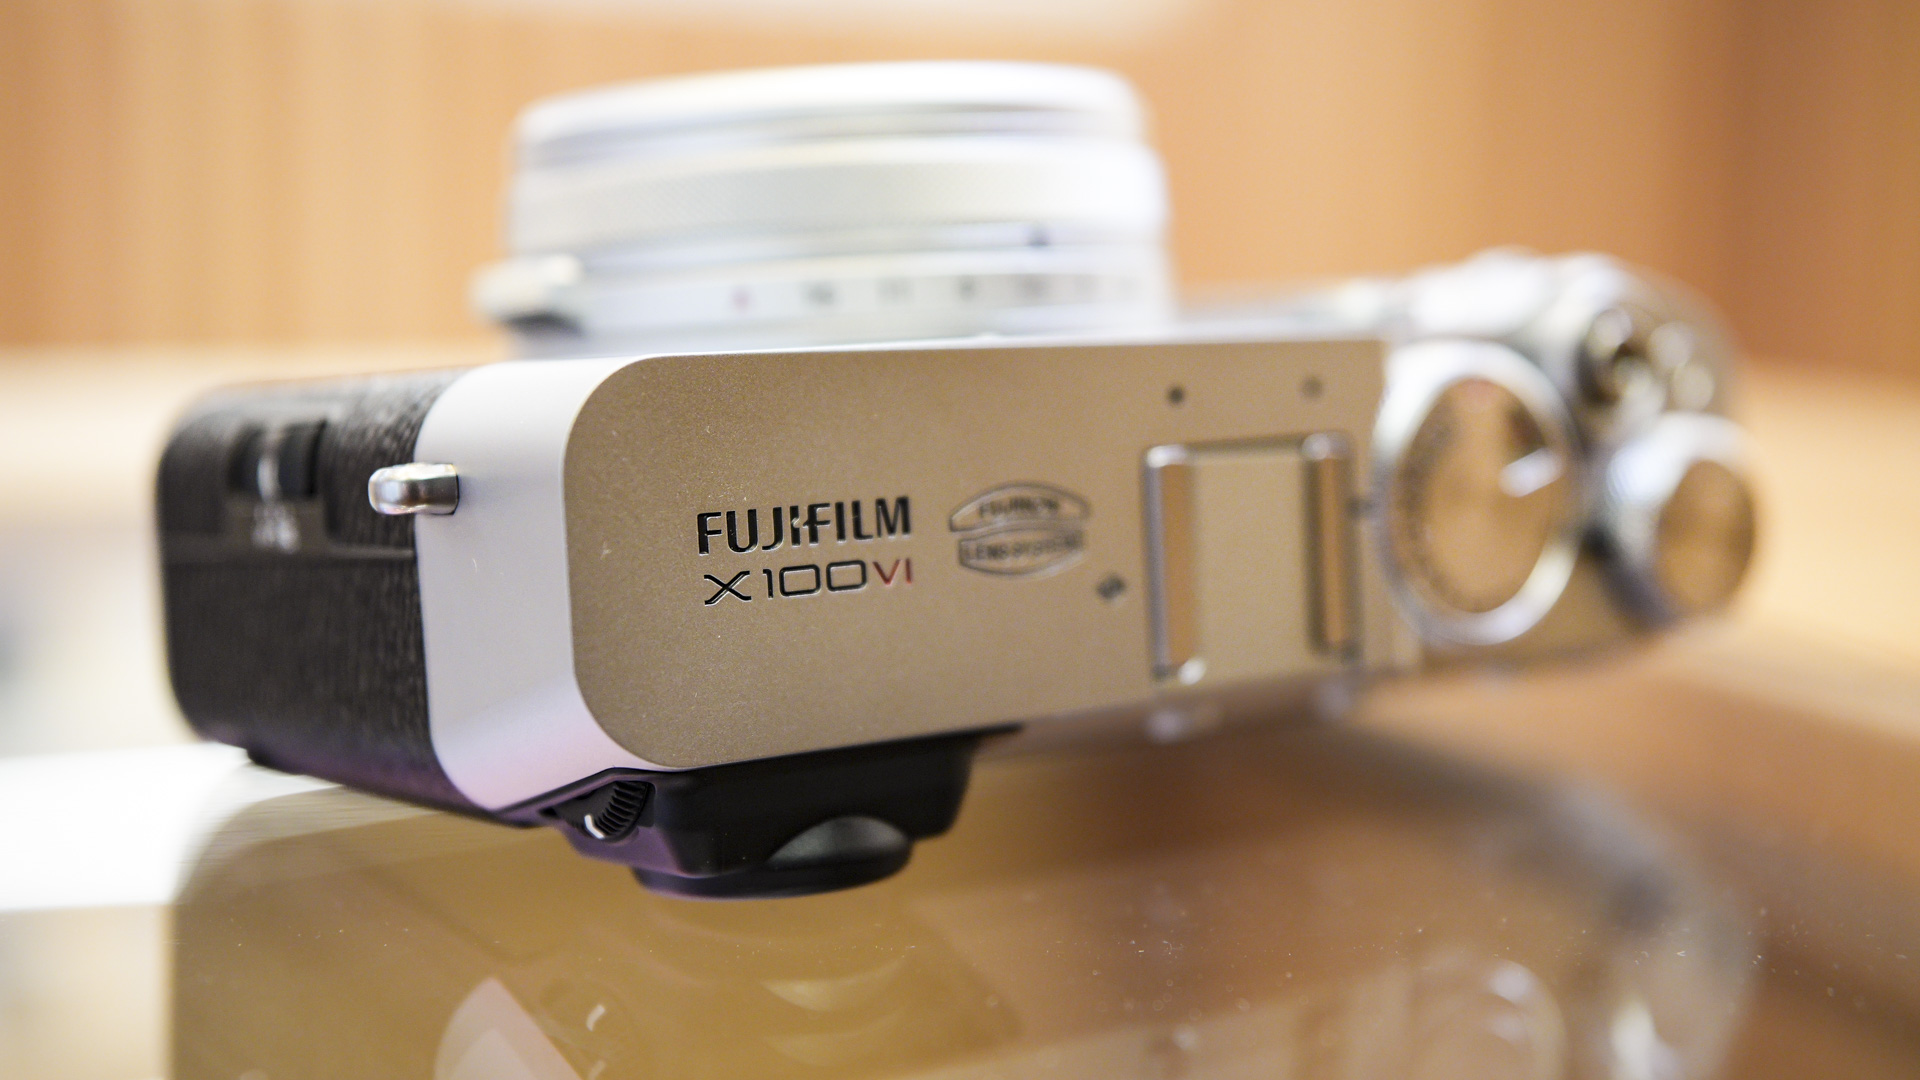 Top plate of the Fujifilm X100VI